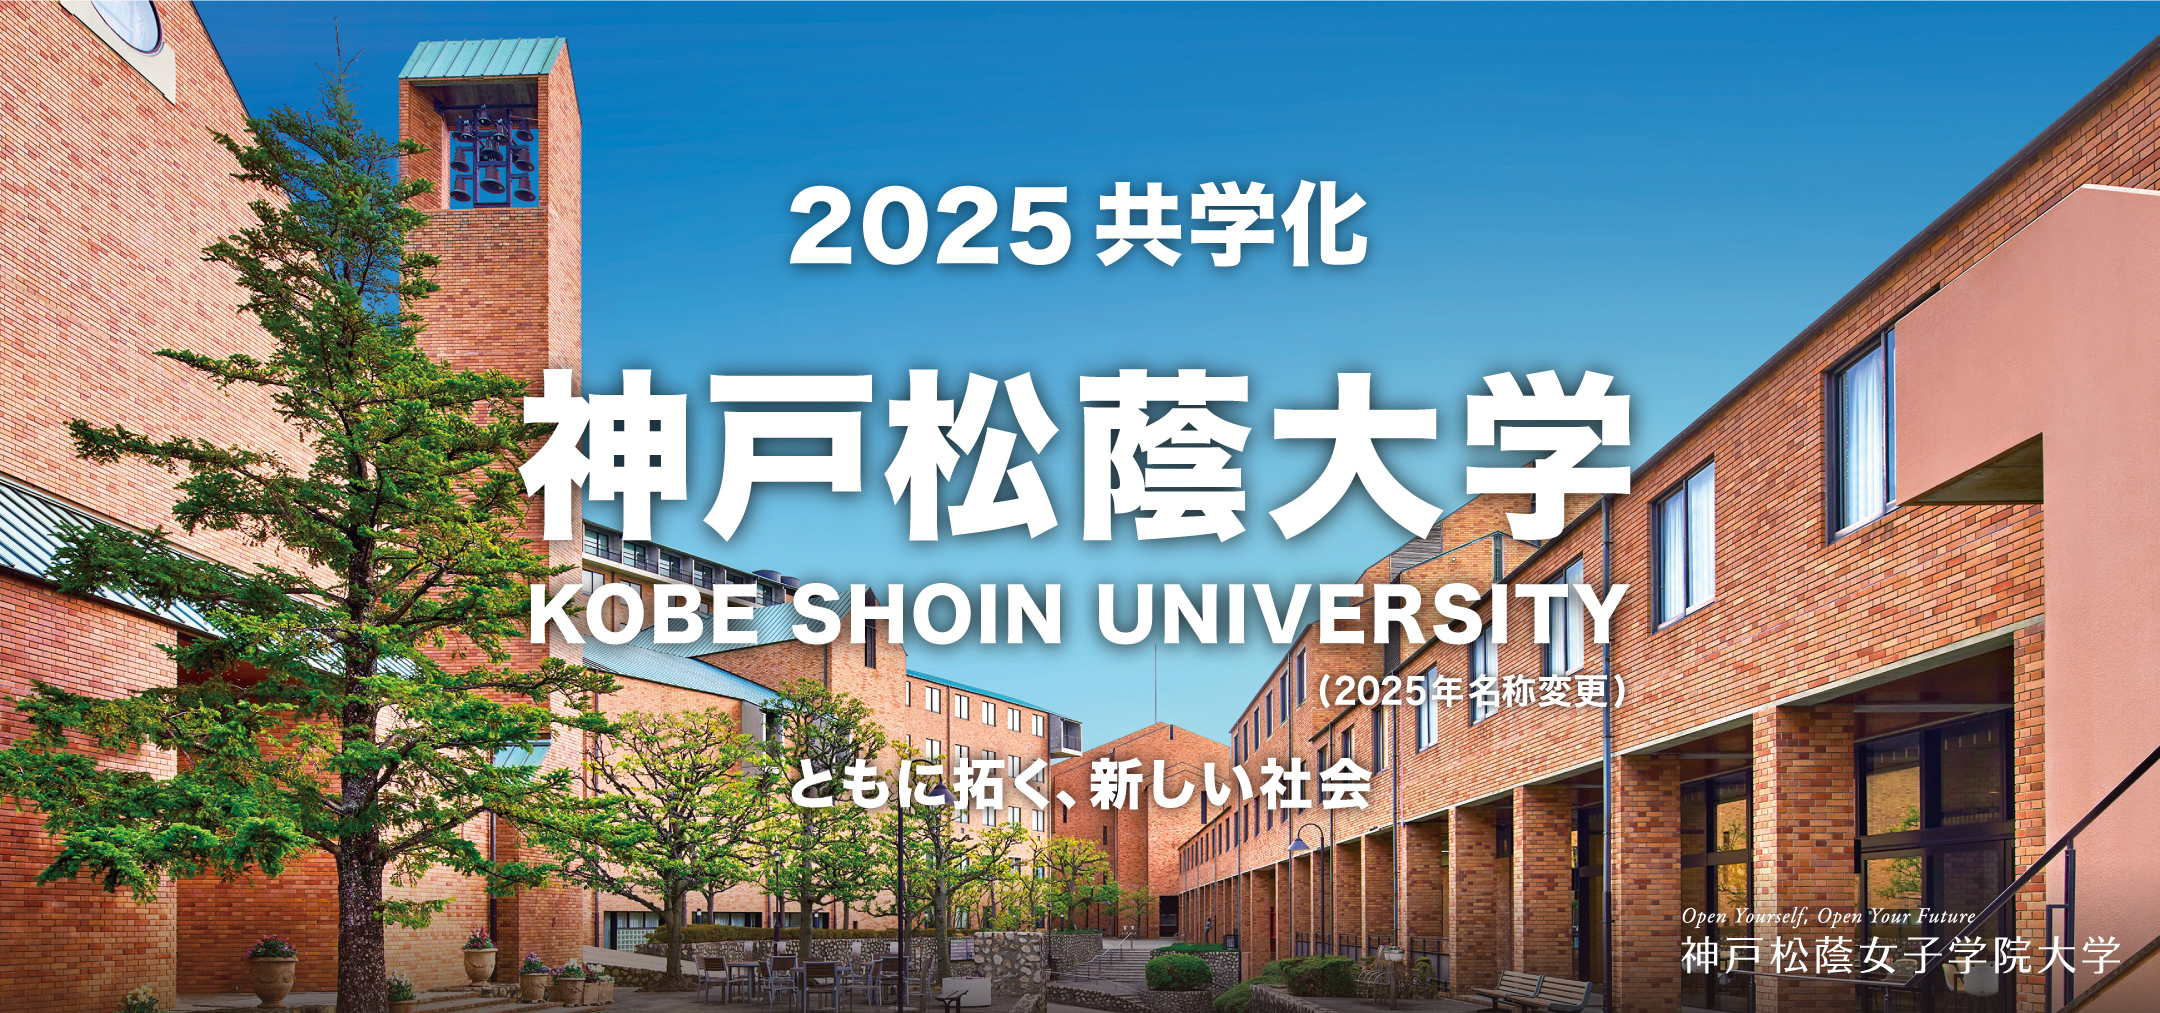 2025共学化 神戸松蔭大学